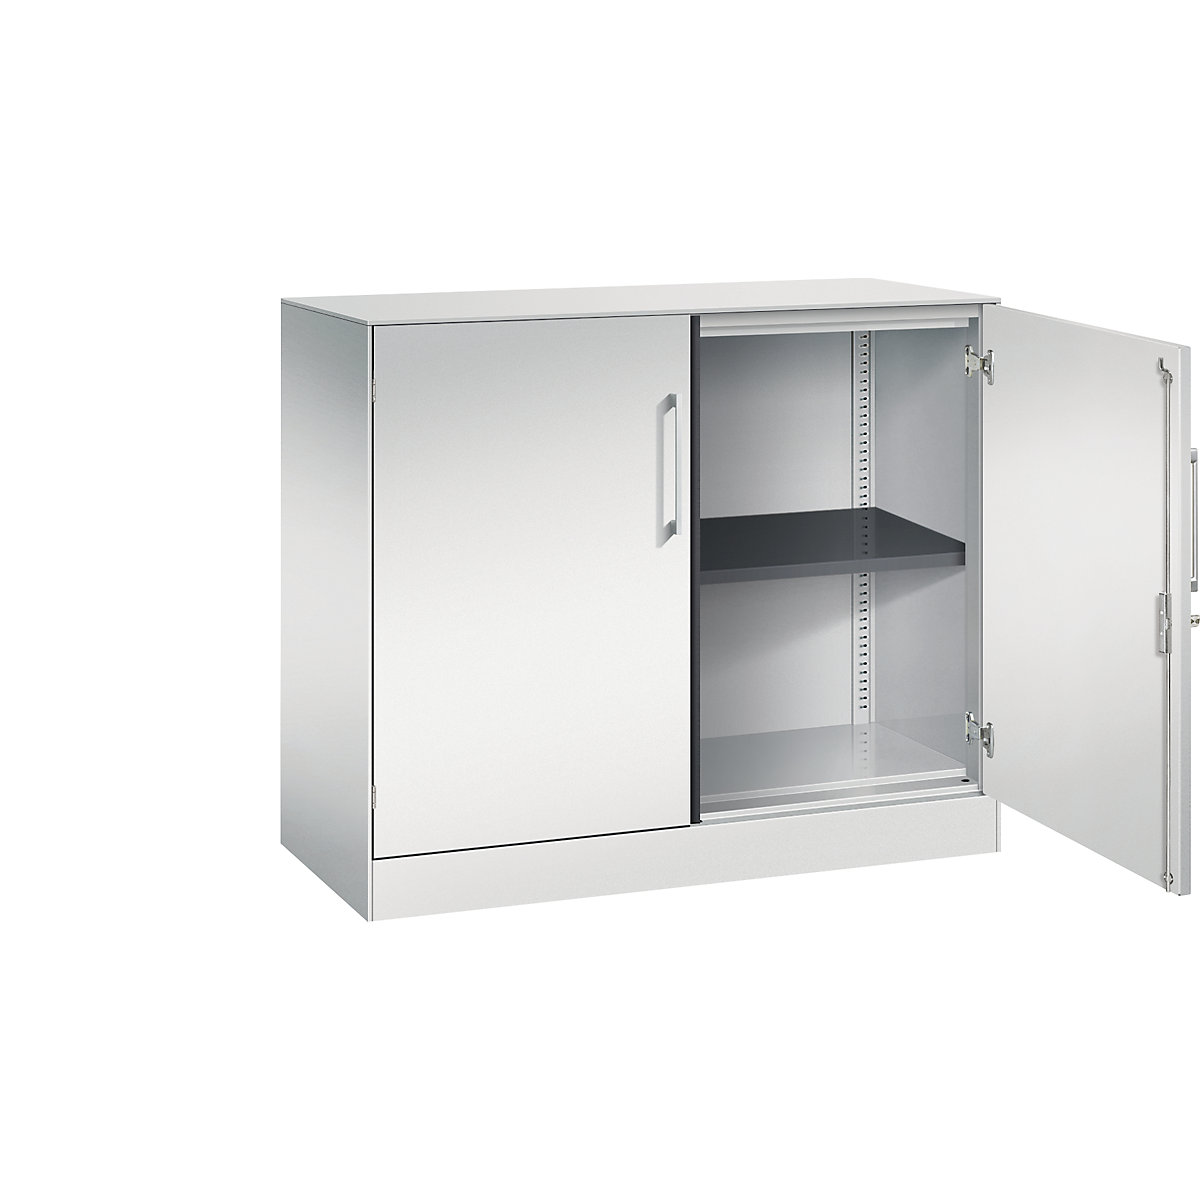 ASISTO double door cupboard, height 897 mm – C+P, width 1000 mm, 1 shelf, light grey/light grey-5